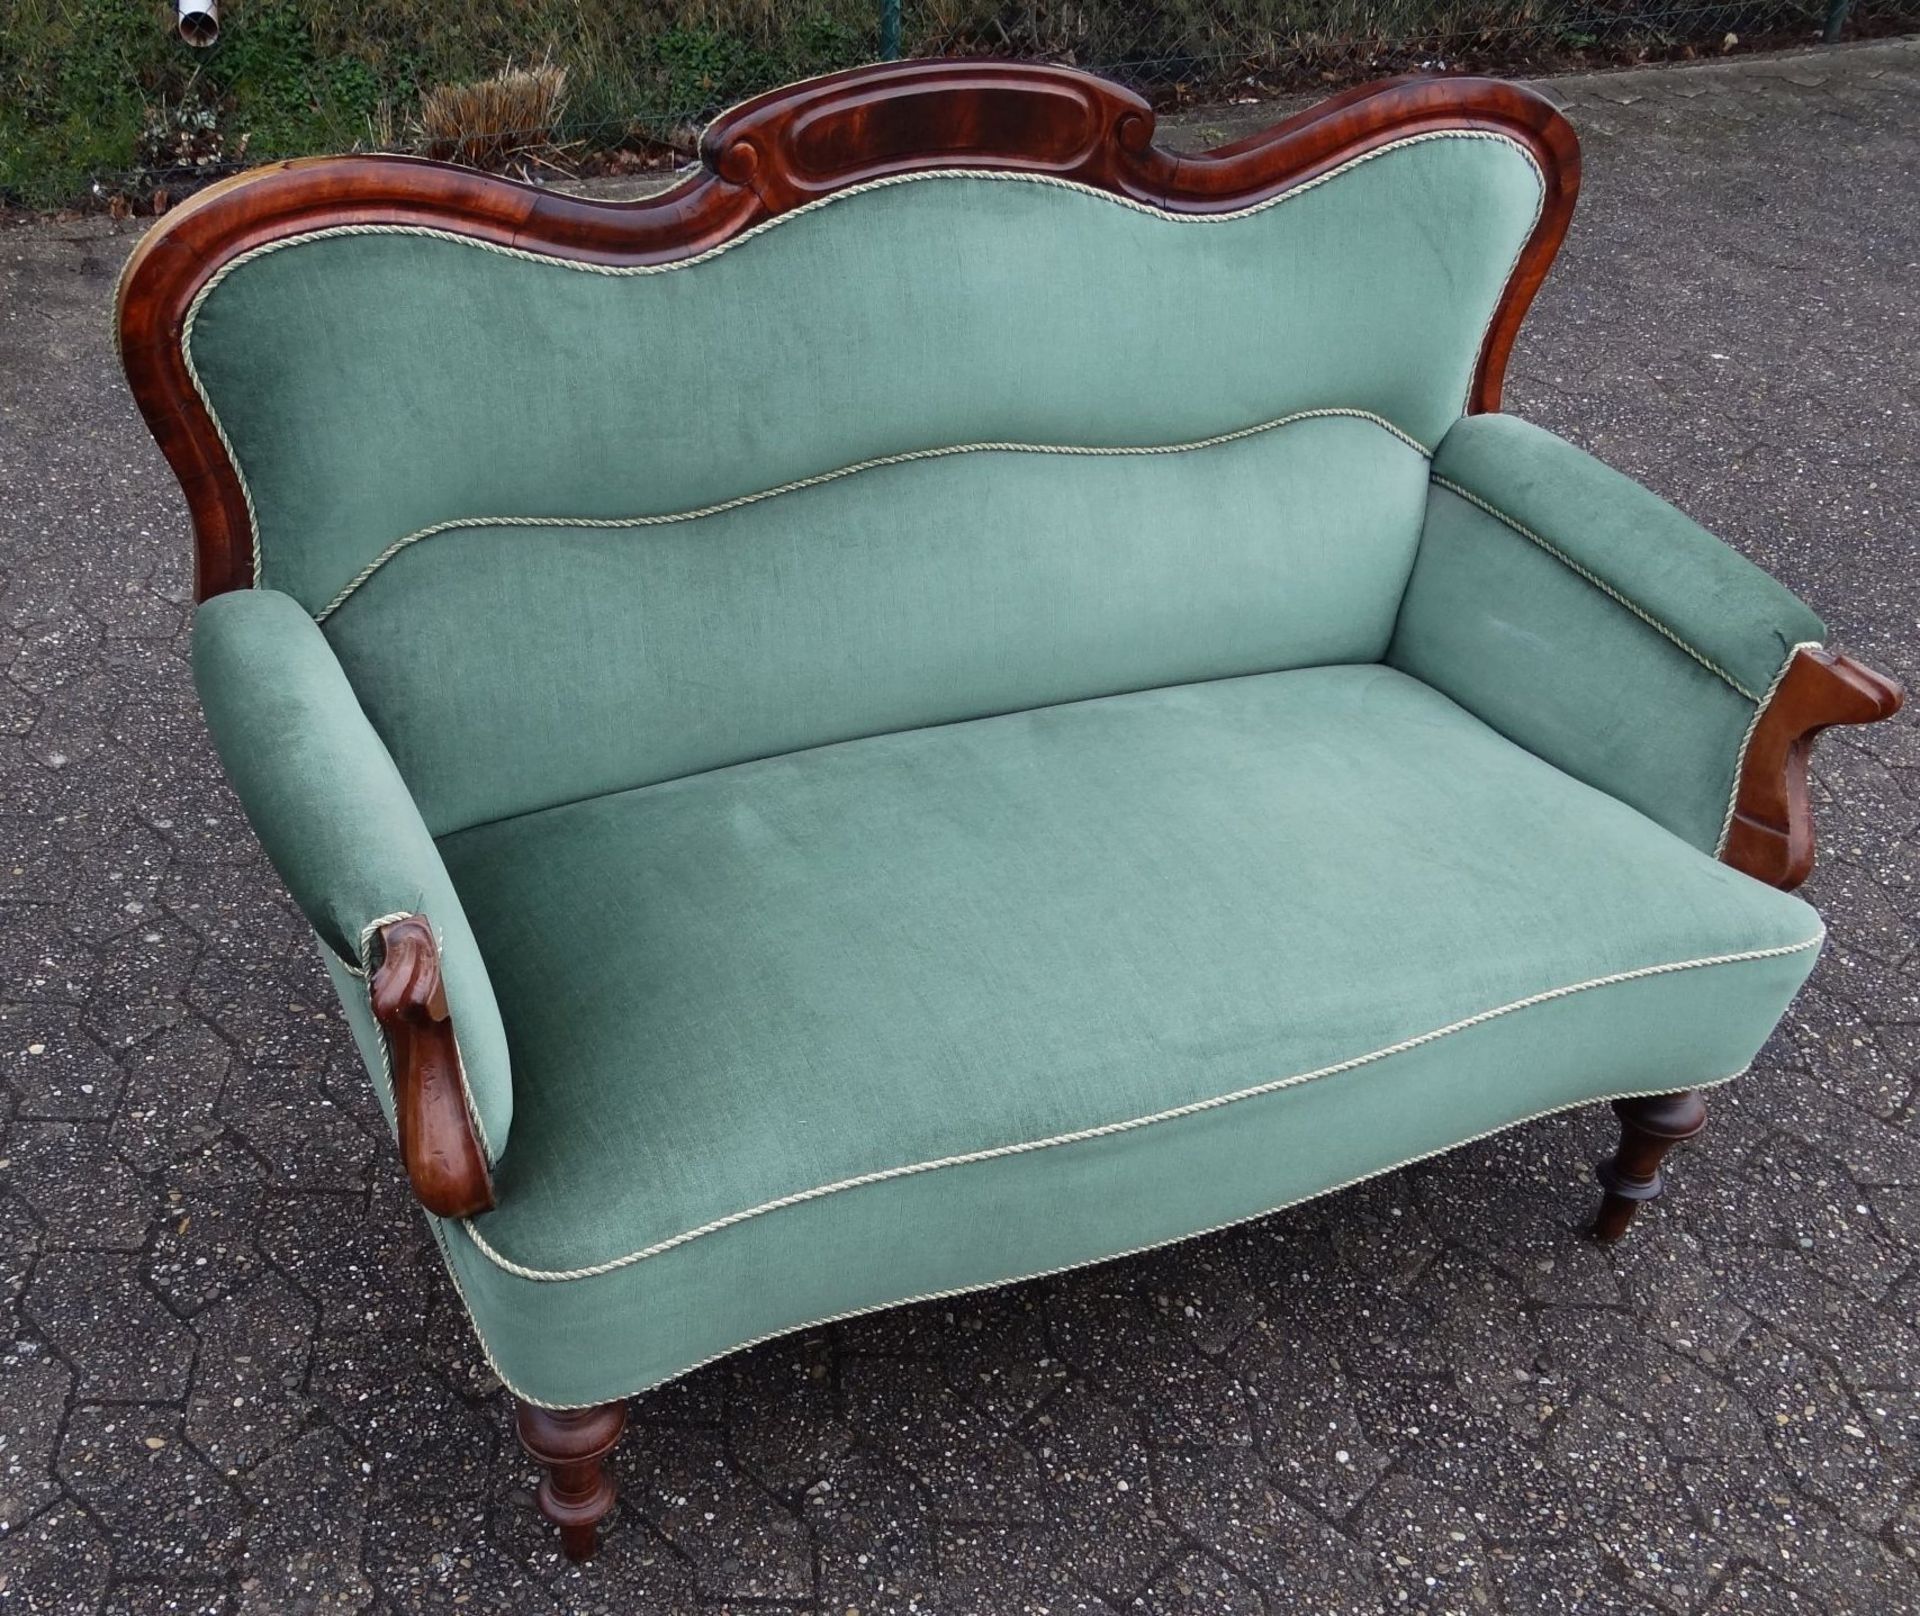 kl. Sofa um 1870, sehr guter Zustand, Federkern, H-100 cm, B-130 cm, T-64 cm, Sitzhöhe 47 c - Bild 3 aus 6